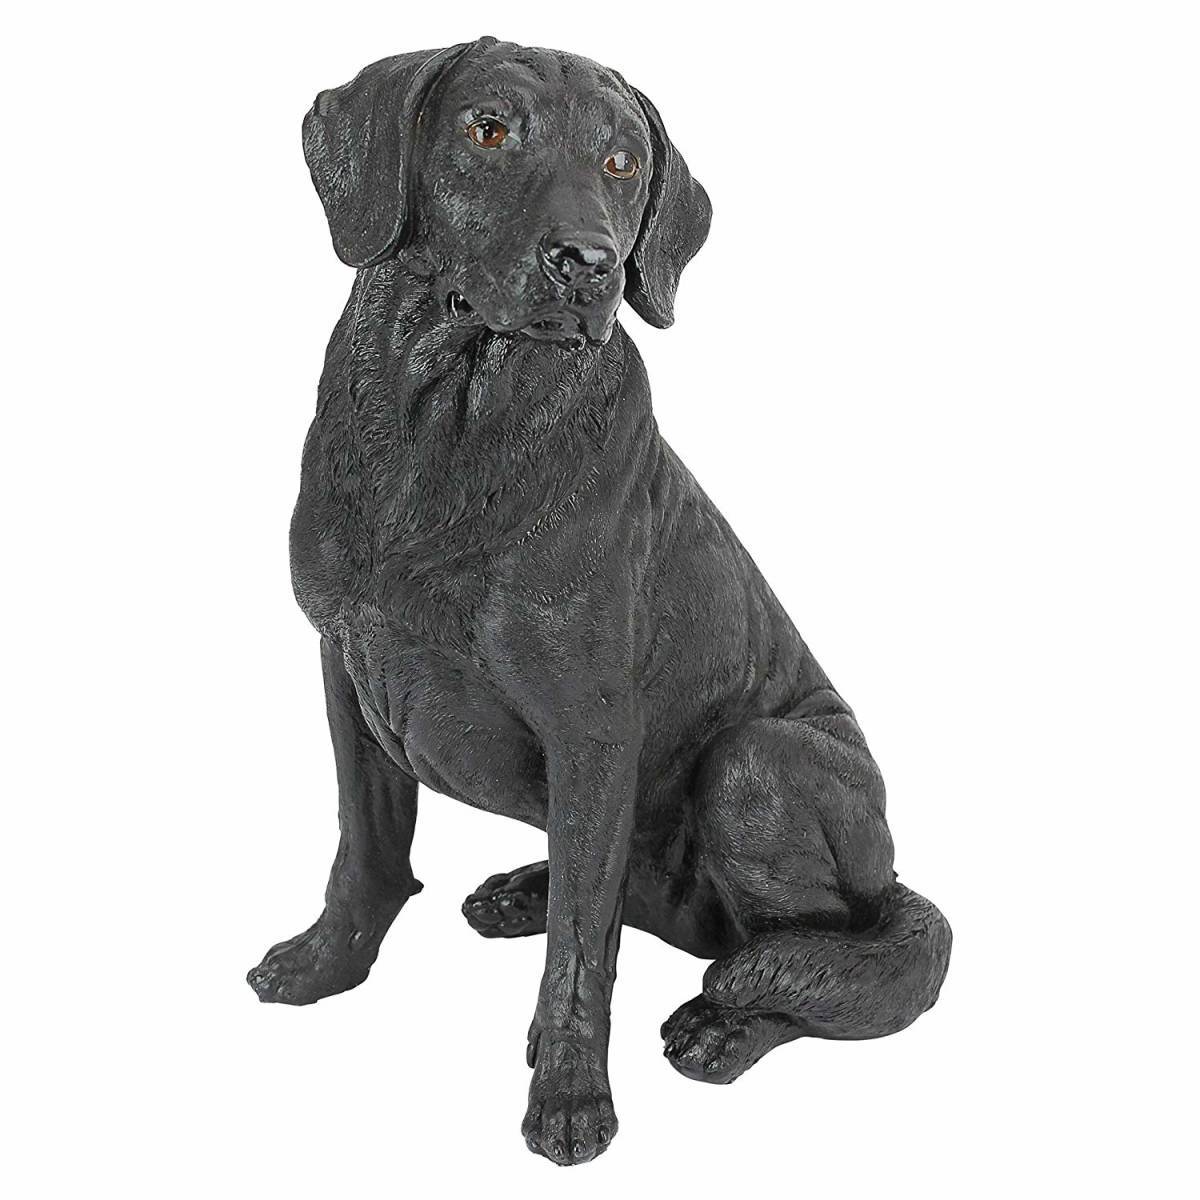 100％安い ブラックラブラドールレトリーバー犬彫像 動物彫刻 介護補助犬 ペットショップ ドッグカフェ 獣医 癒し 記念品 プレゼント贈り物